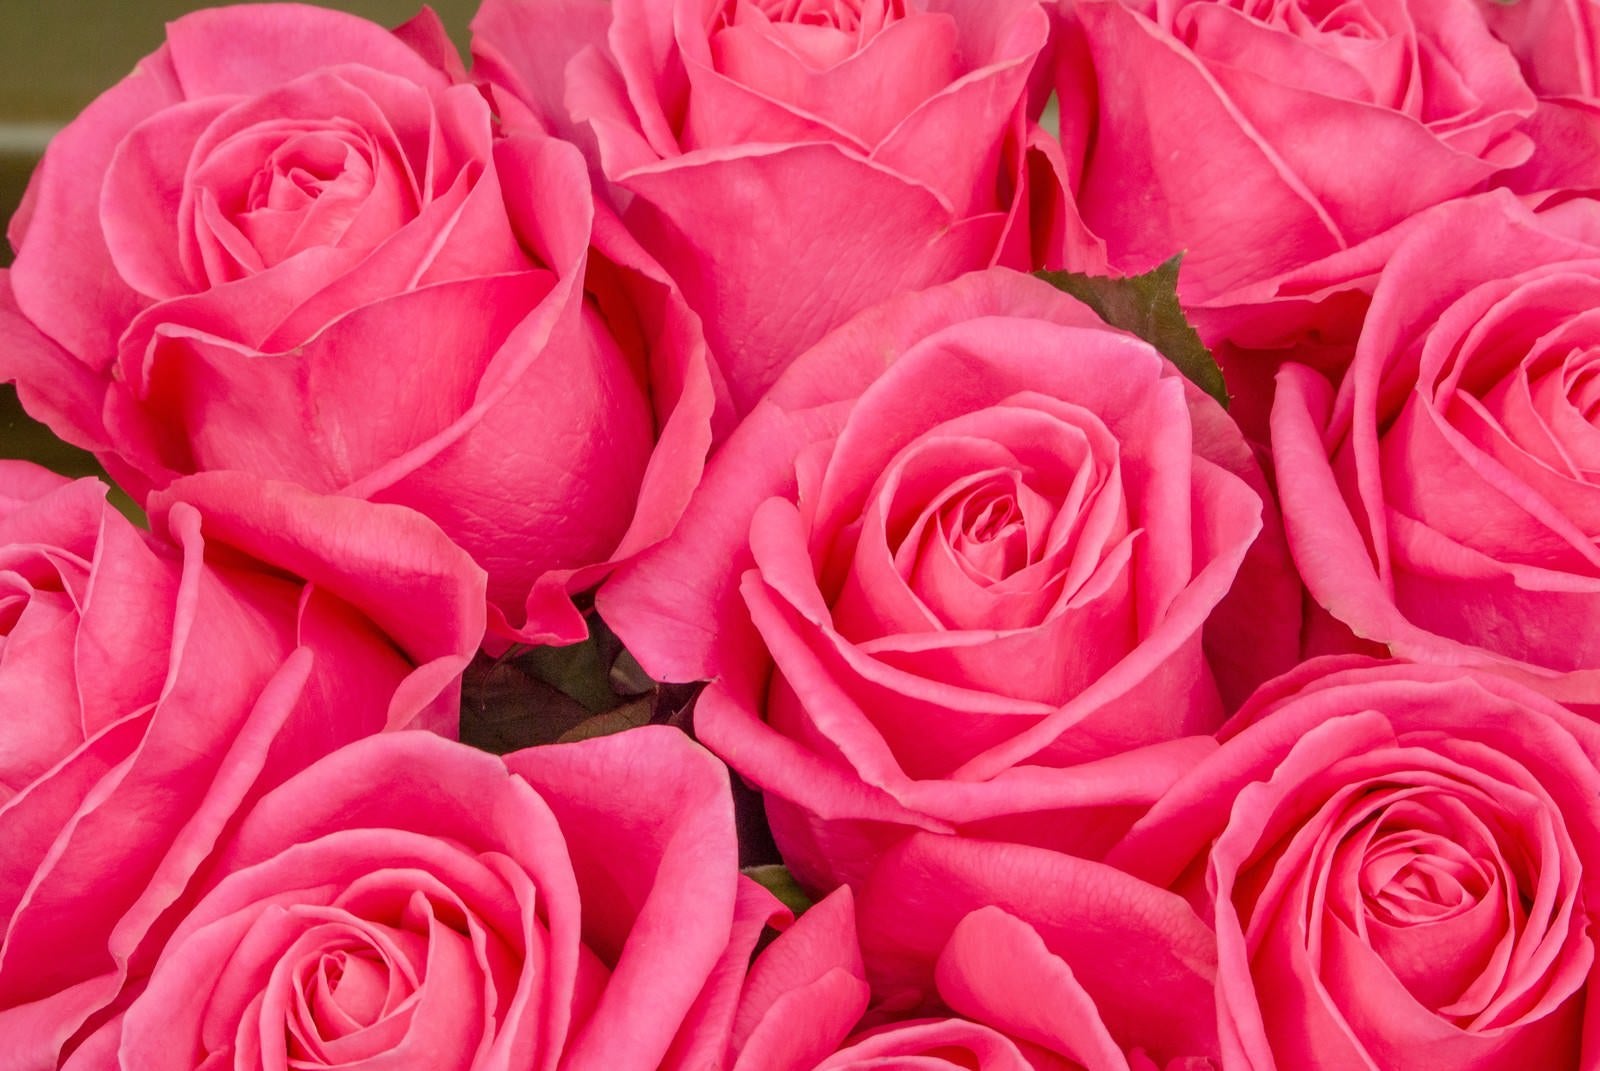 「ピンク色の薔薇のテクスチャ」の写真